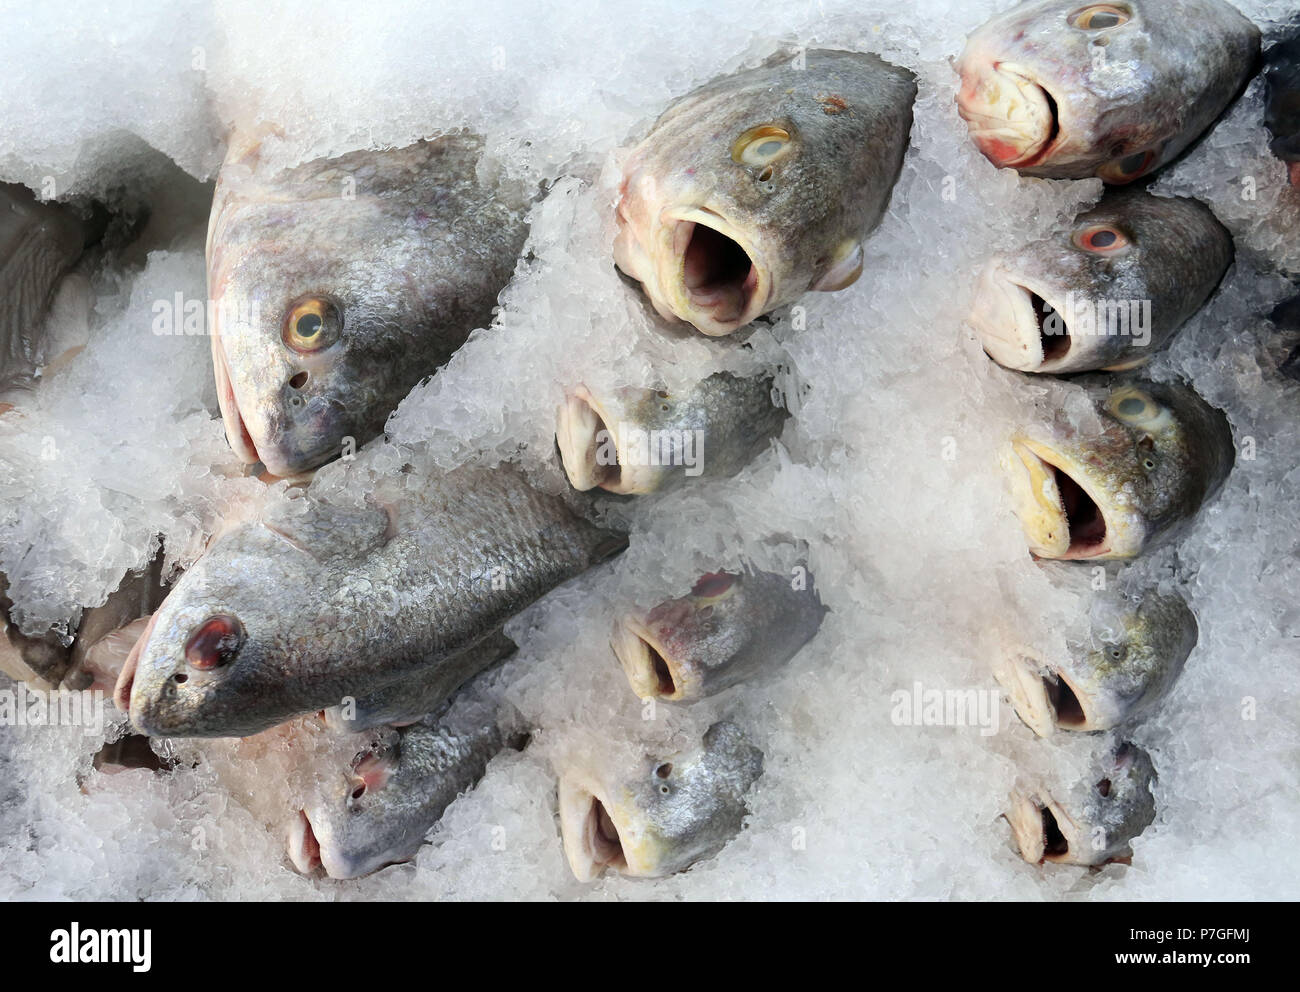 Perchaude poisson sur glace au marché de poissons Banque D'Images